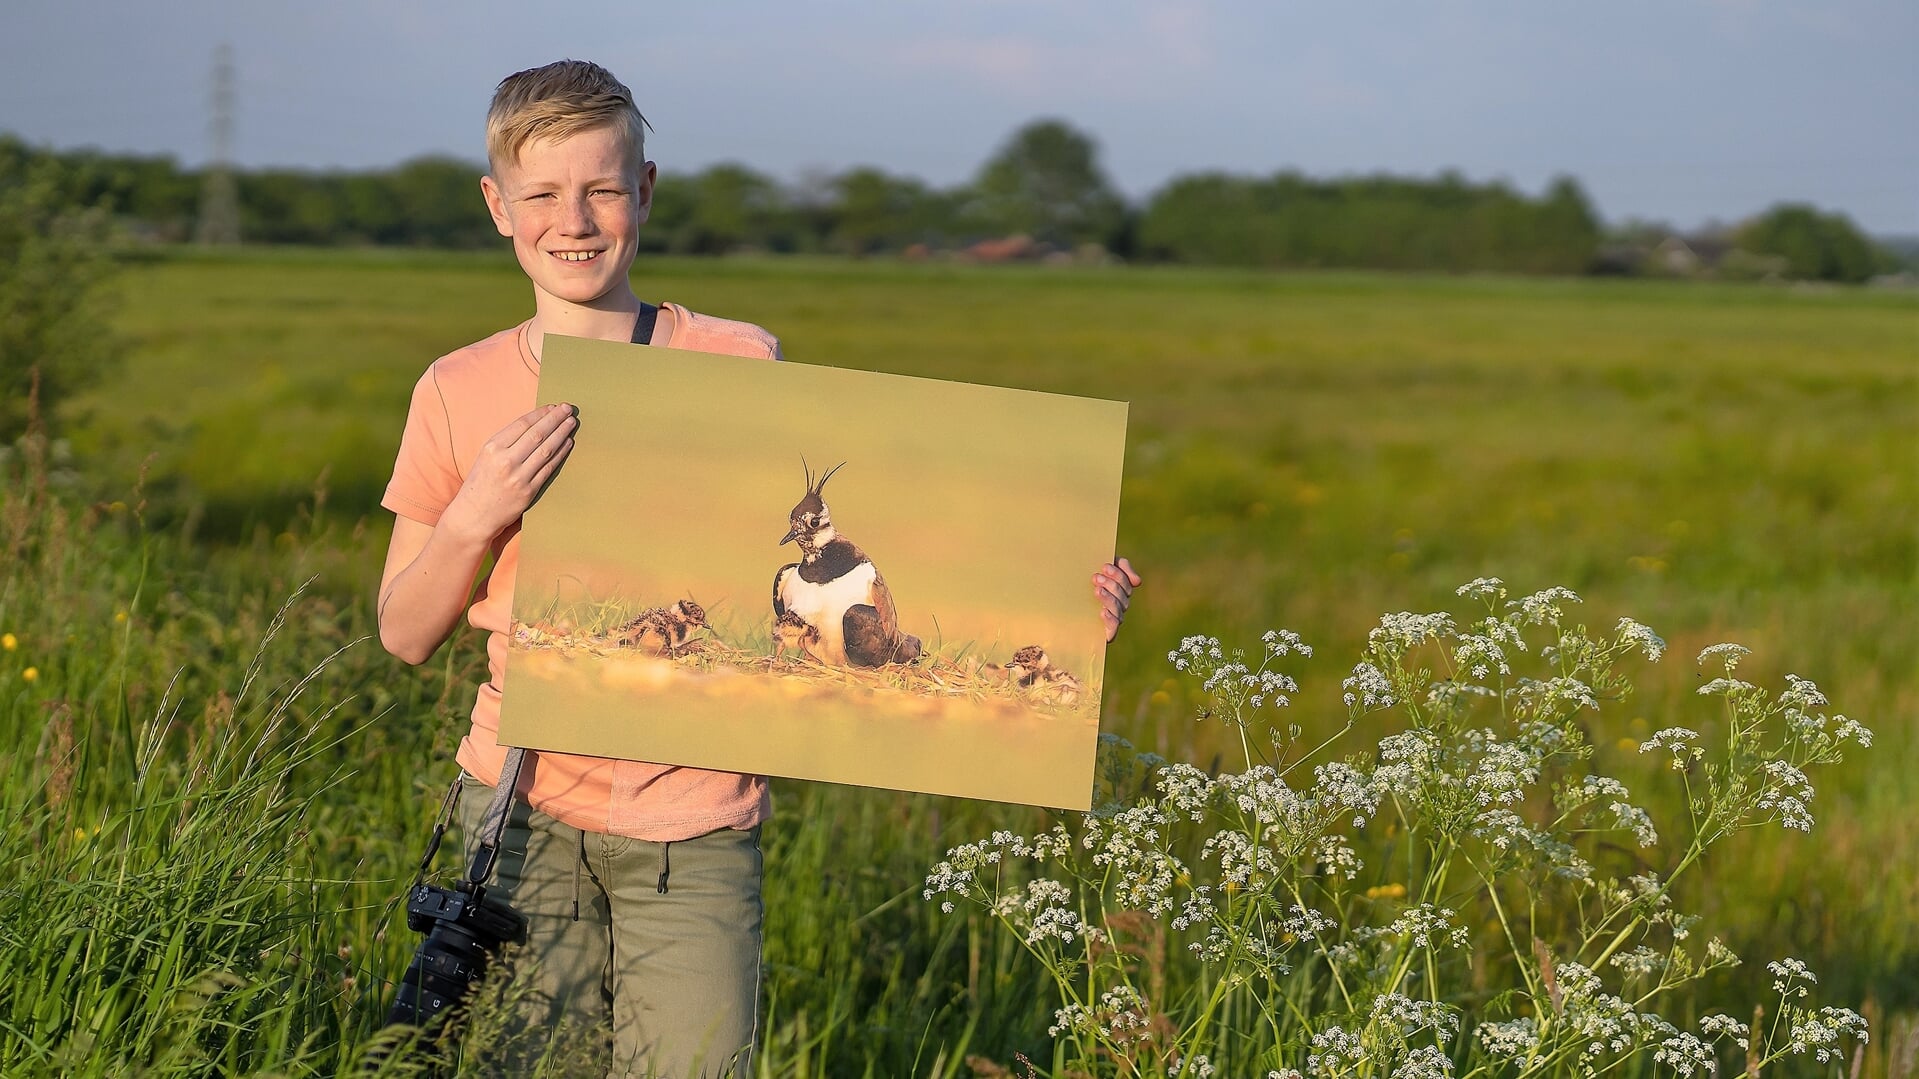 Tussen het hoge gras in de Bennekomse Hooilanden toont David Vink (12) de foto waar hij het meest trots op is.